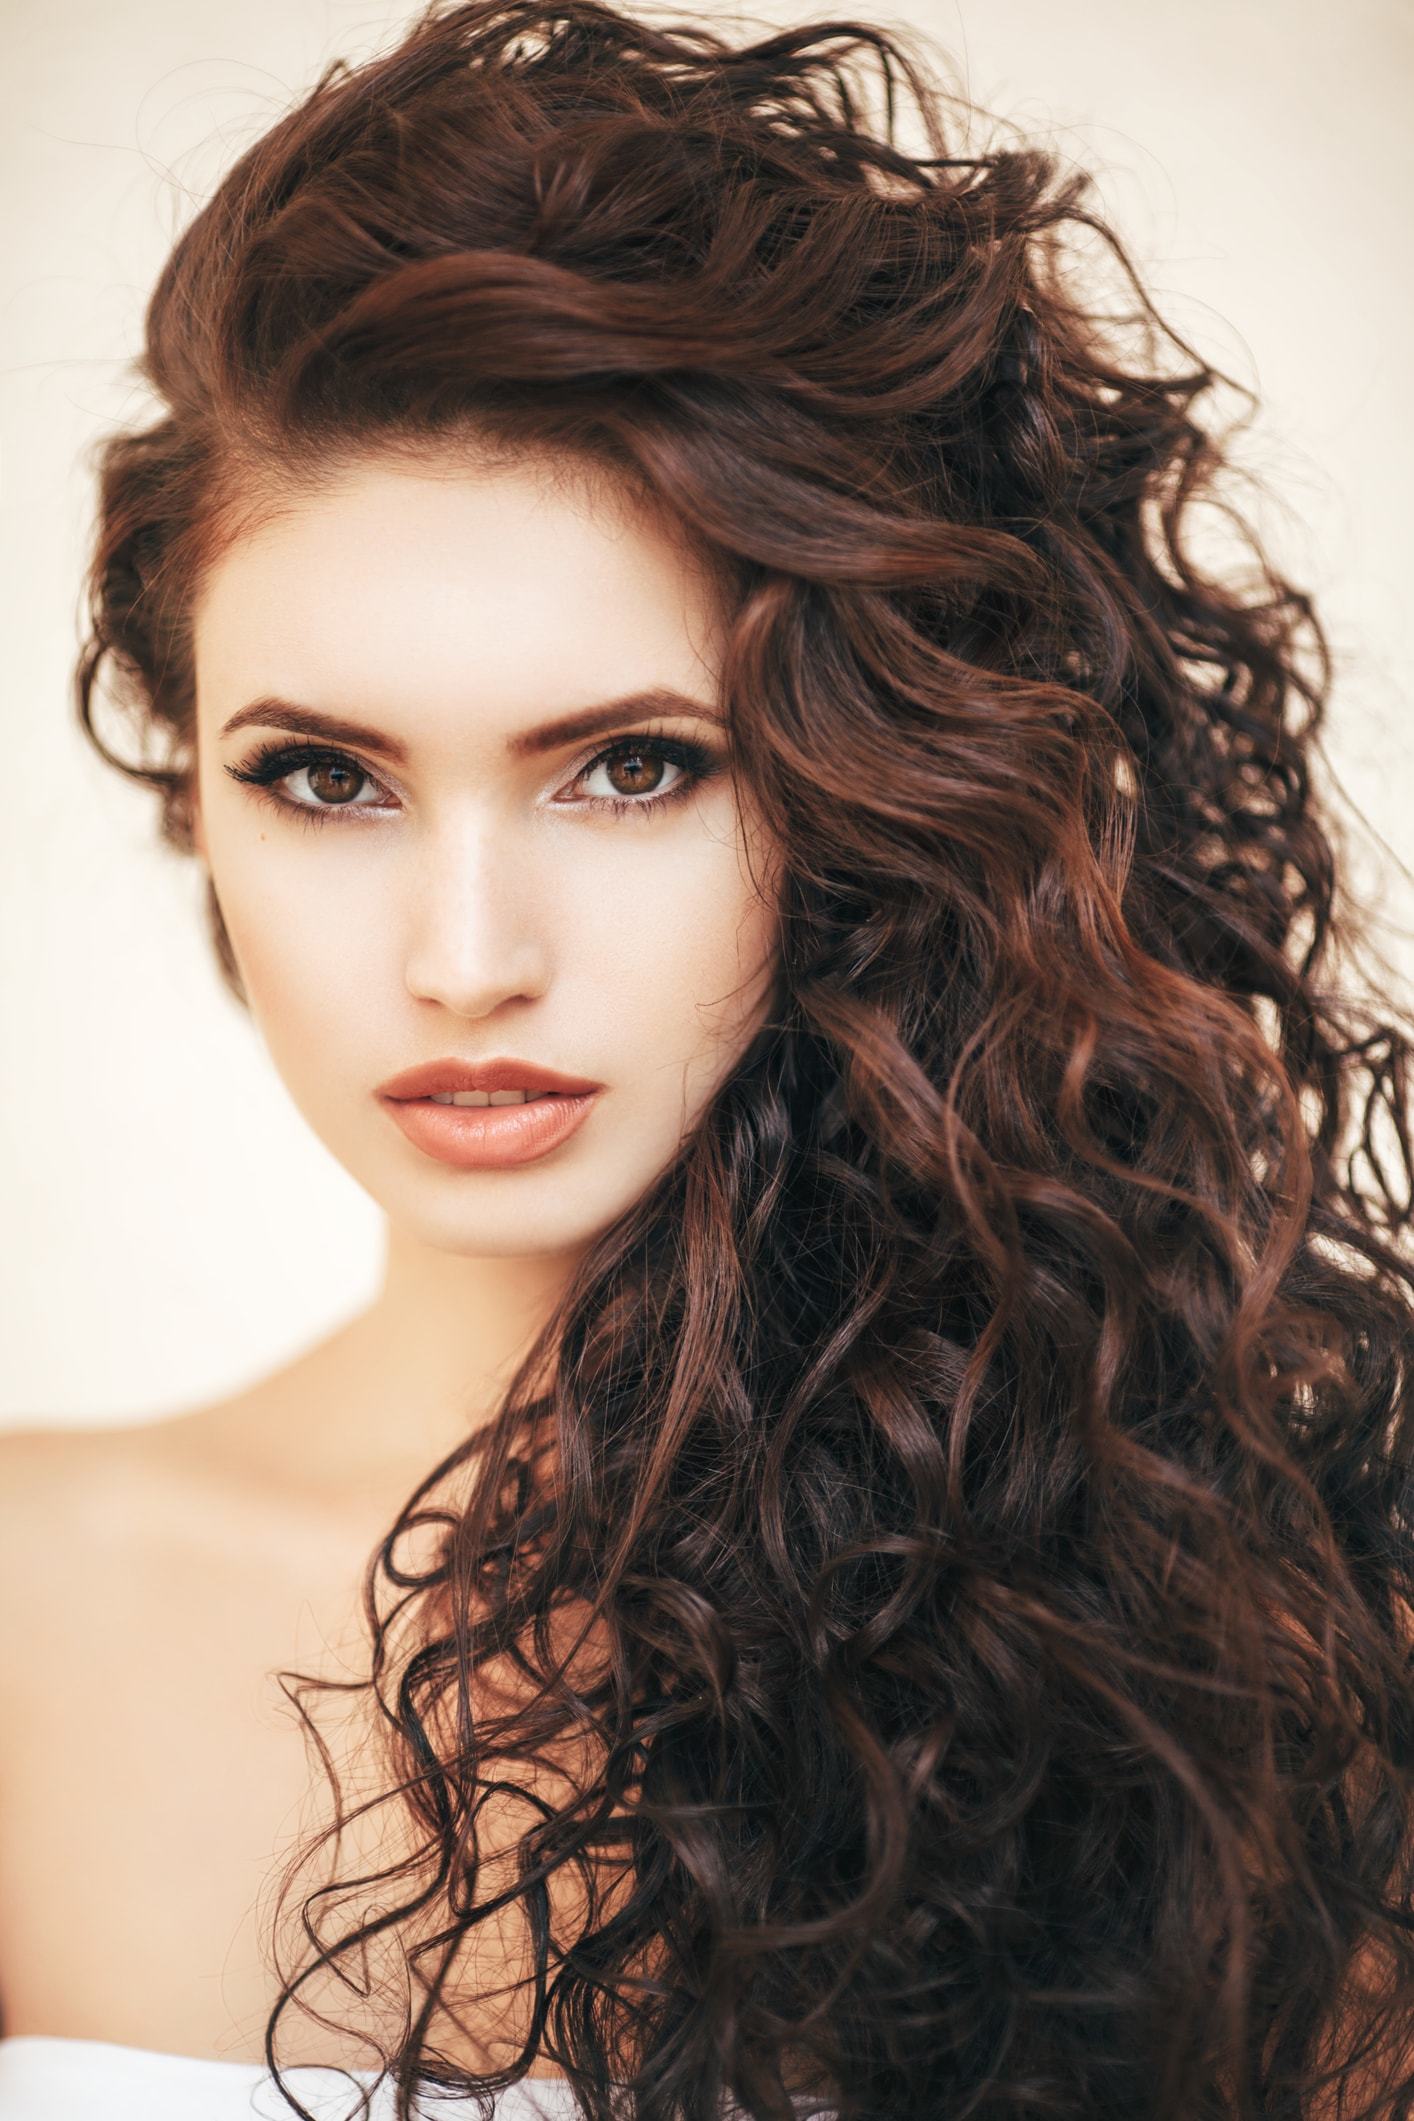 Vivica Fox Hair - Short Spiral Curl Human Hair Wigs | Wig Warehouse